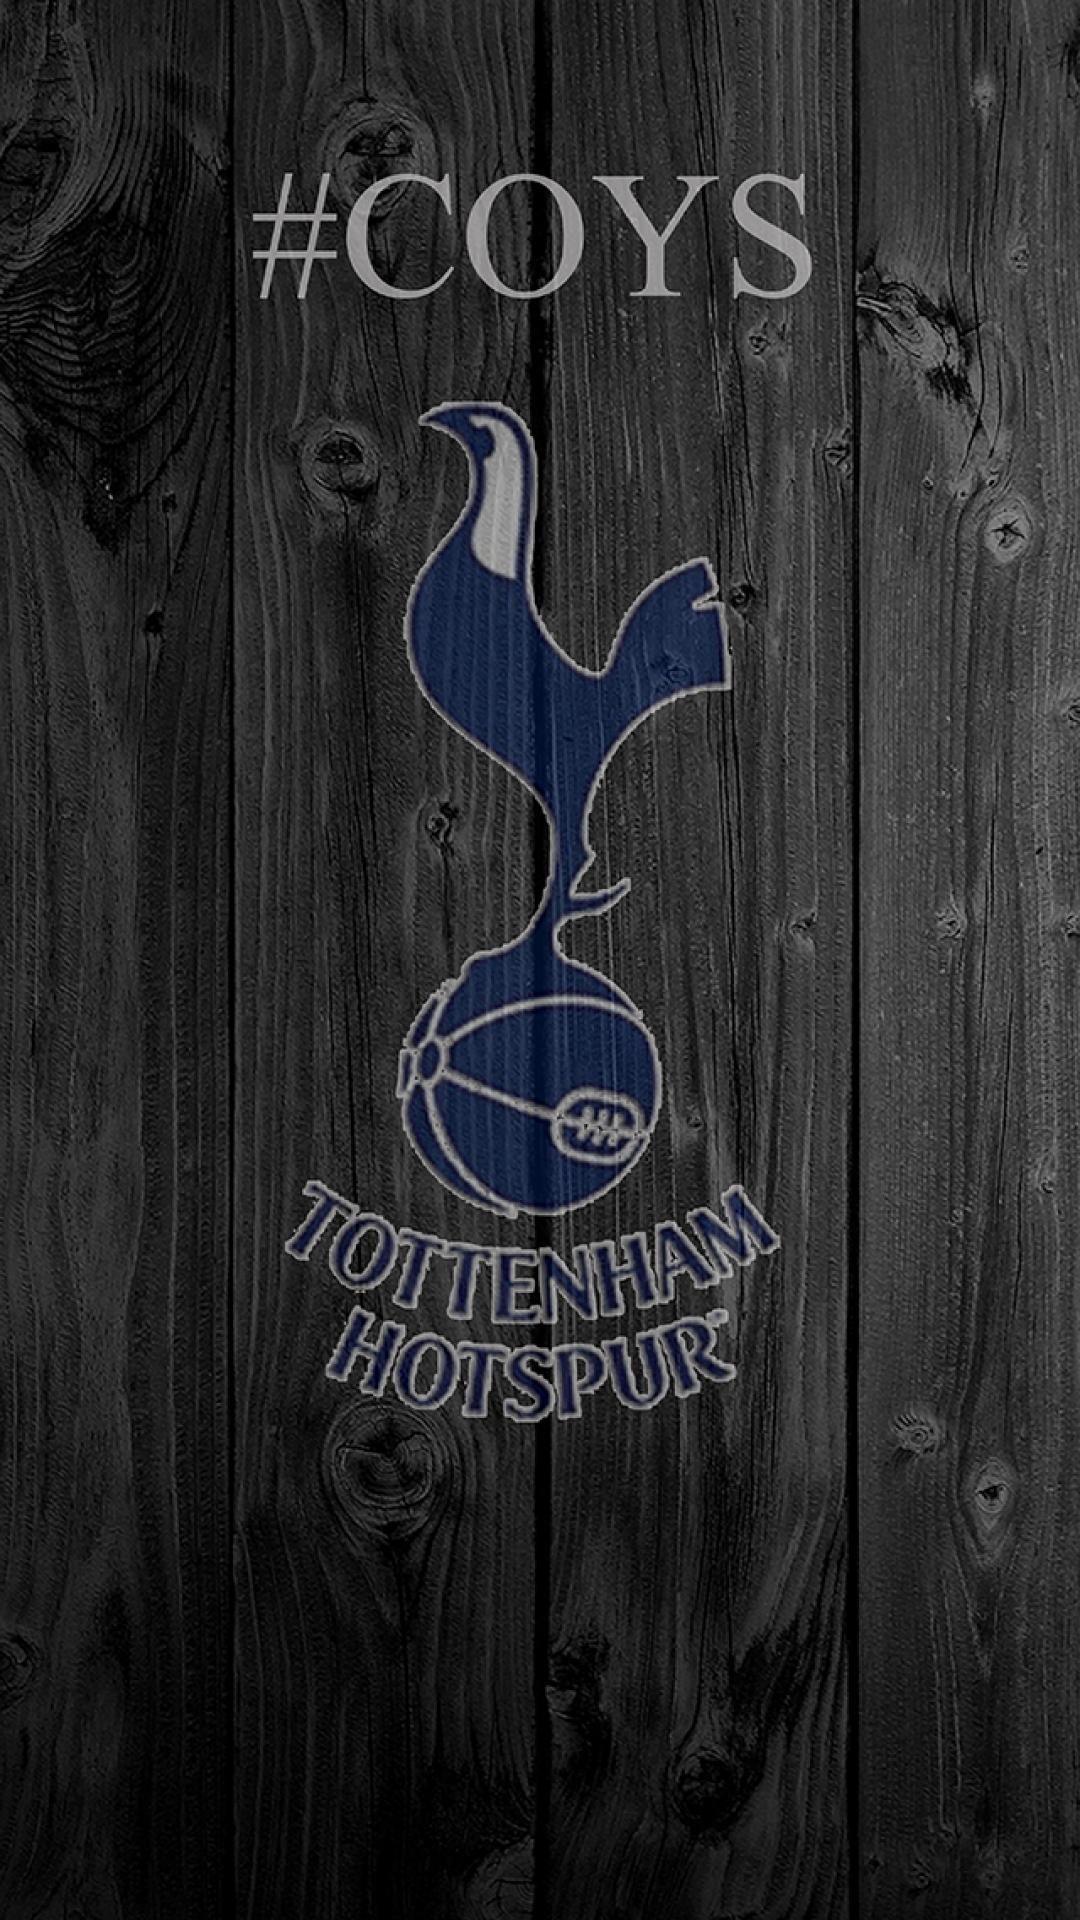 Premier League Hotspur iPhone 5 / SE Wallpaper. Image